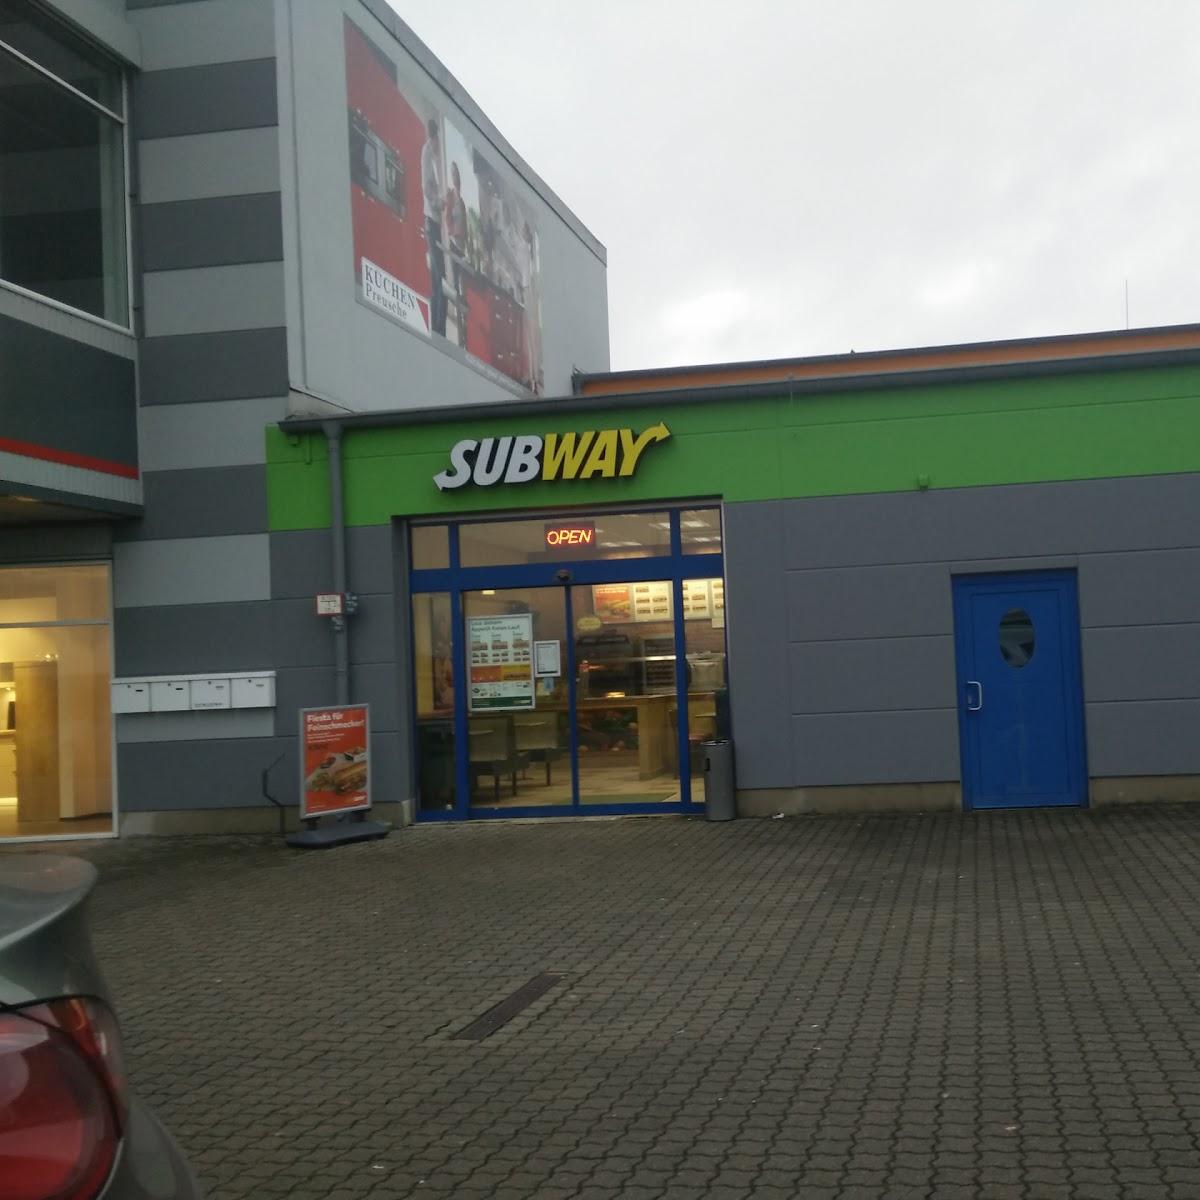 Restaurant "Subway" in Riesa